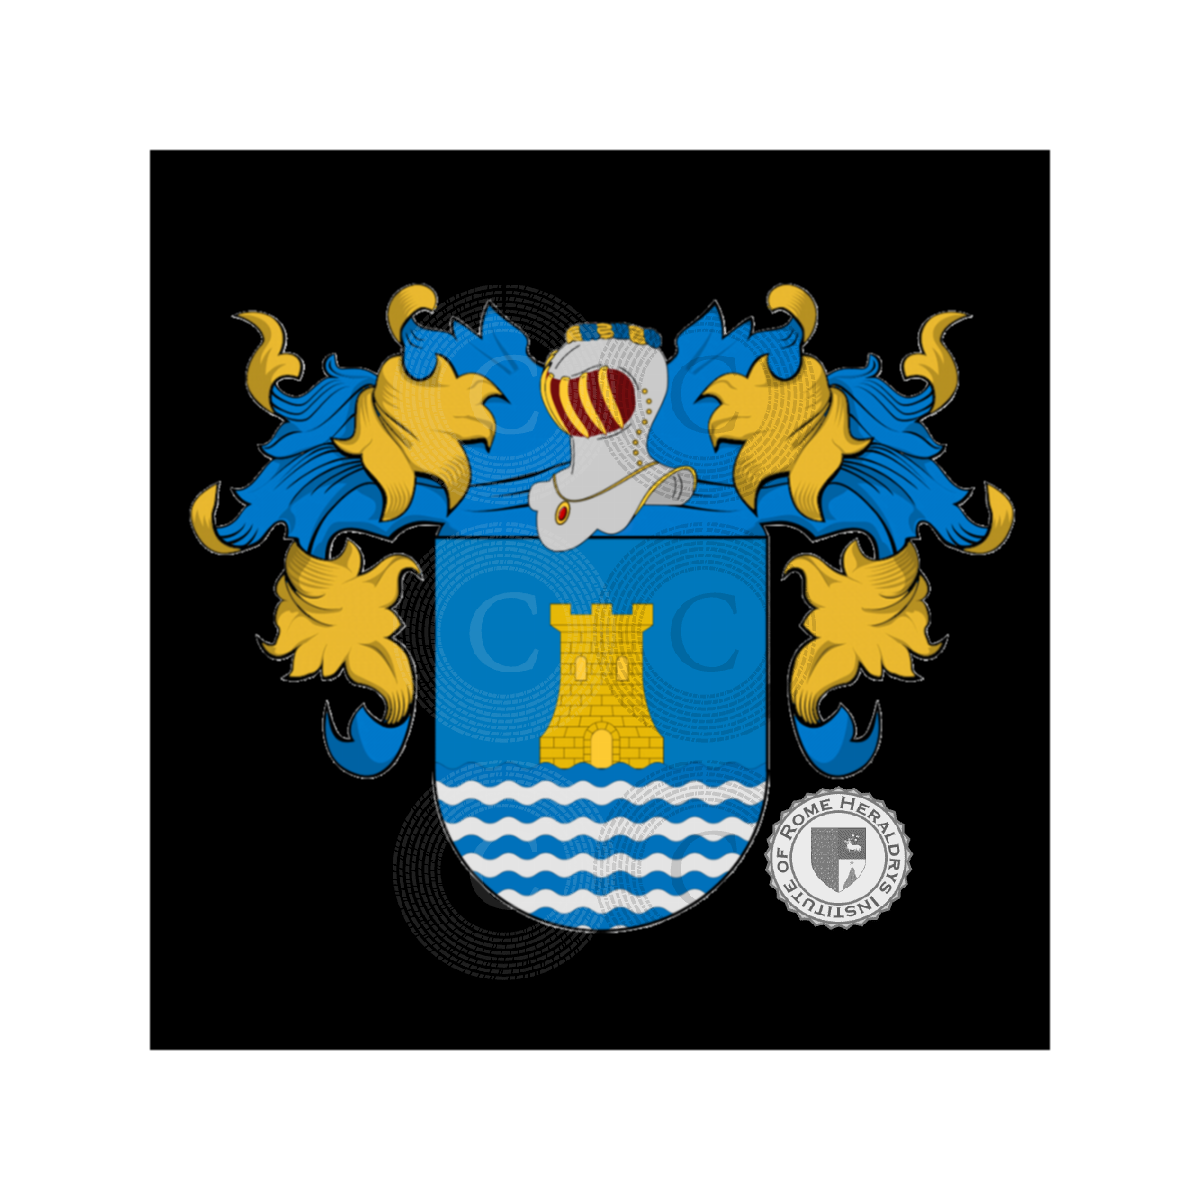 Wappen der FamilieValença